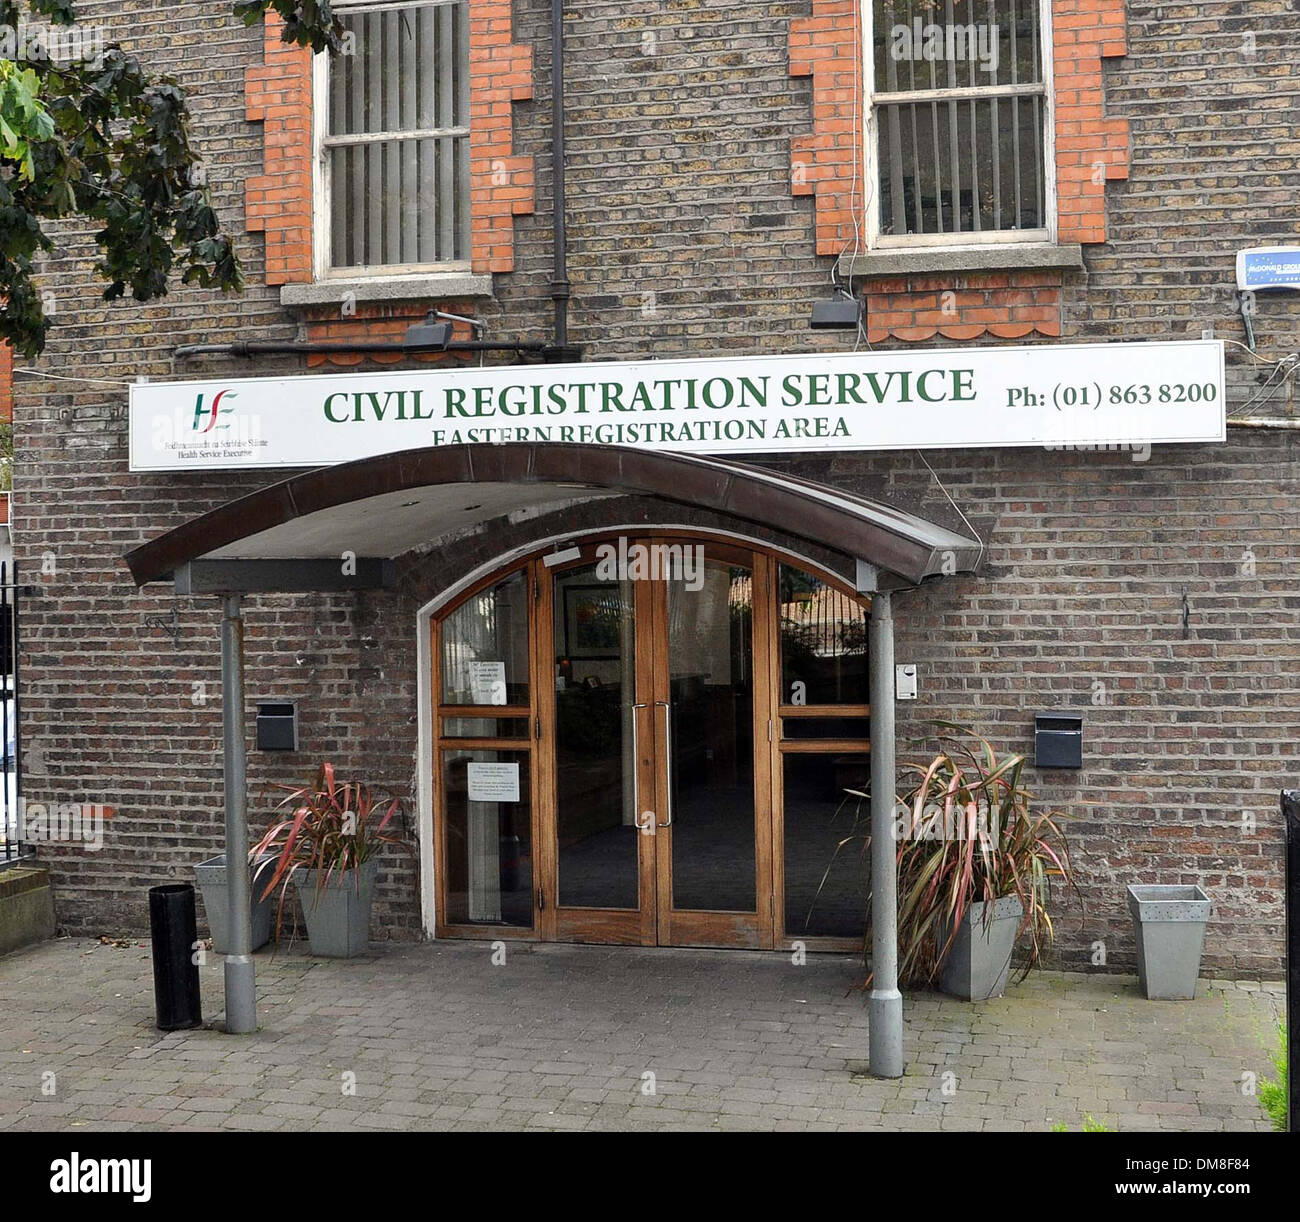 Actualizar 92+ imagen civil registration office dublin